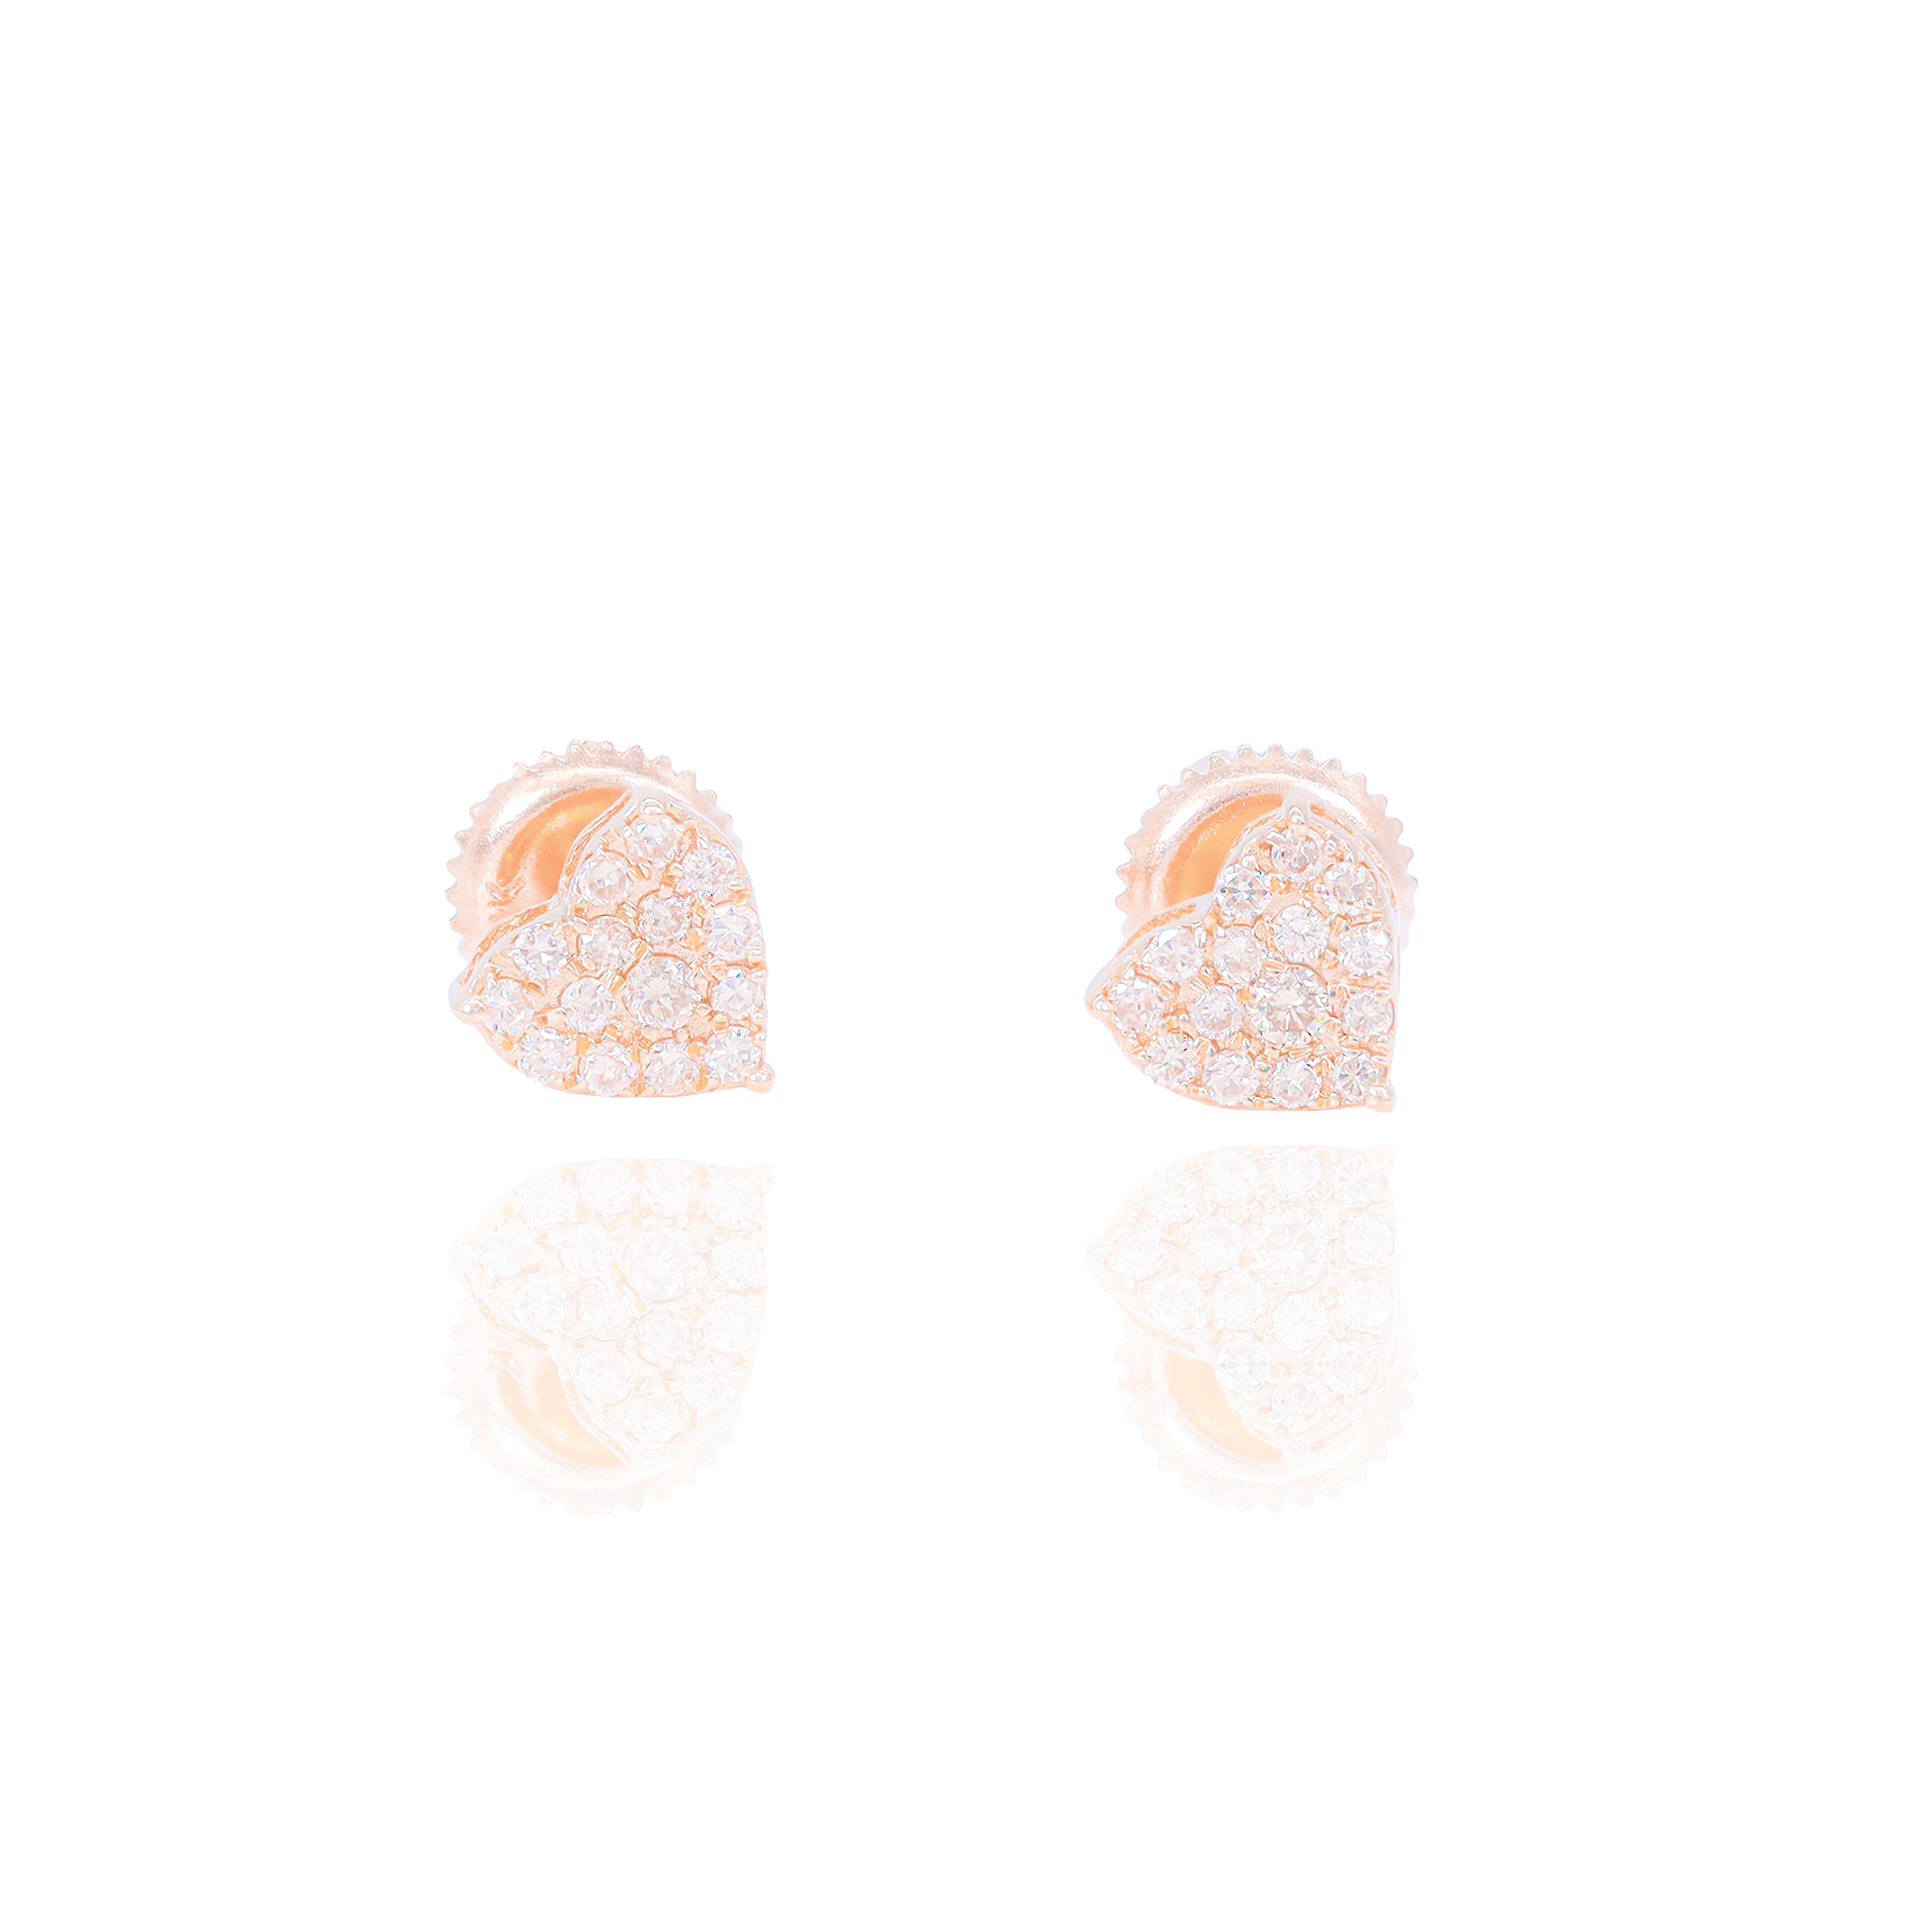 Cluster Heart Shaped Diamond Earrings